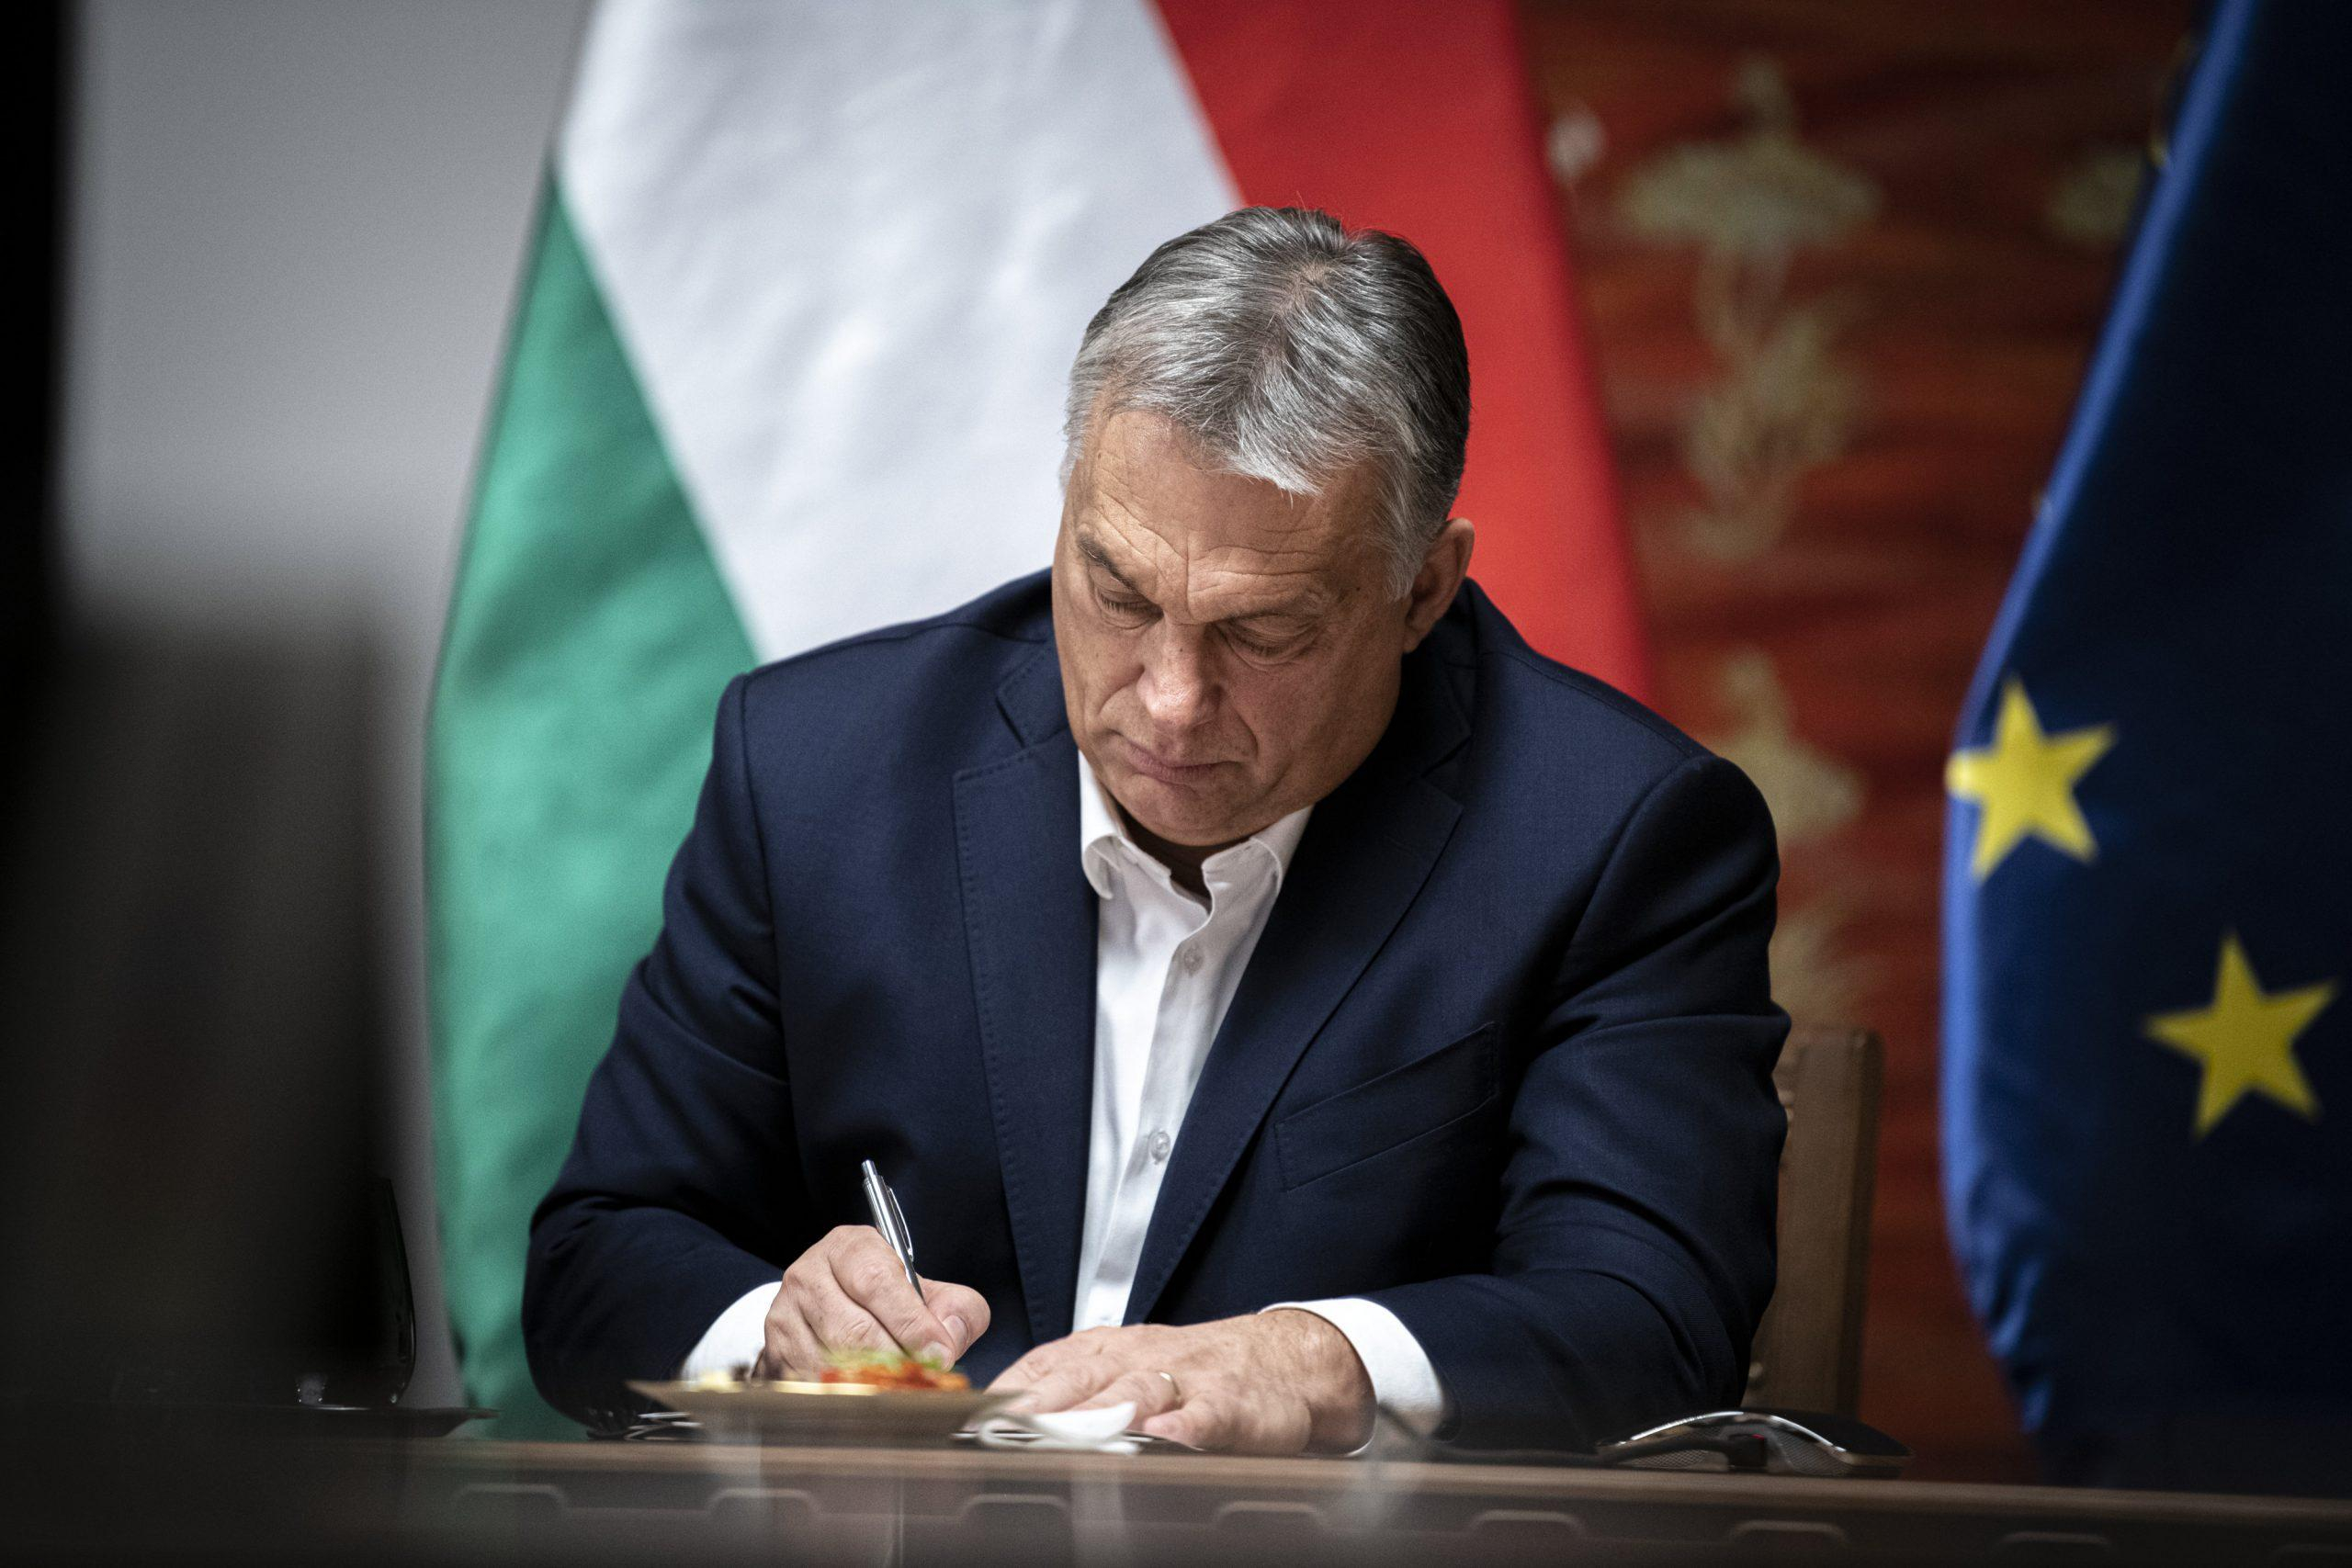 Позиция Виктора Орбана по поводу войны в Украине